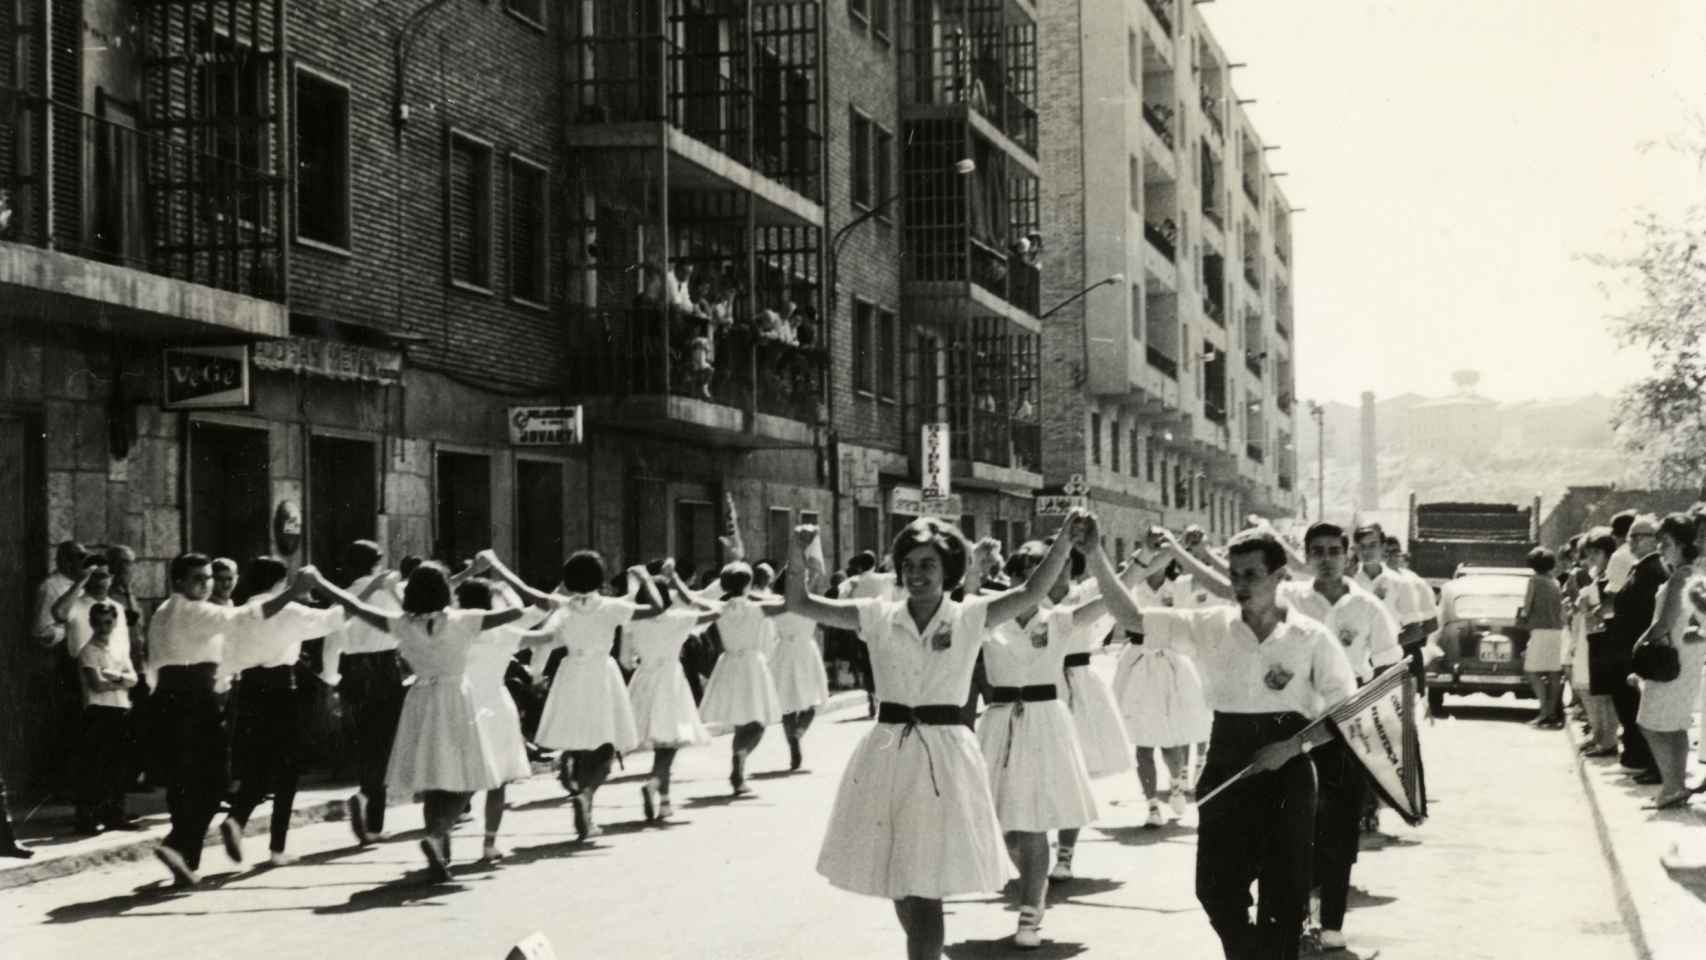 La calle de Mossèn Amadeu Oller llena de gente en el siglo XX